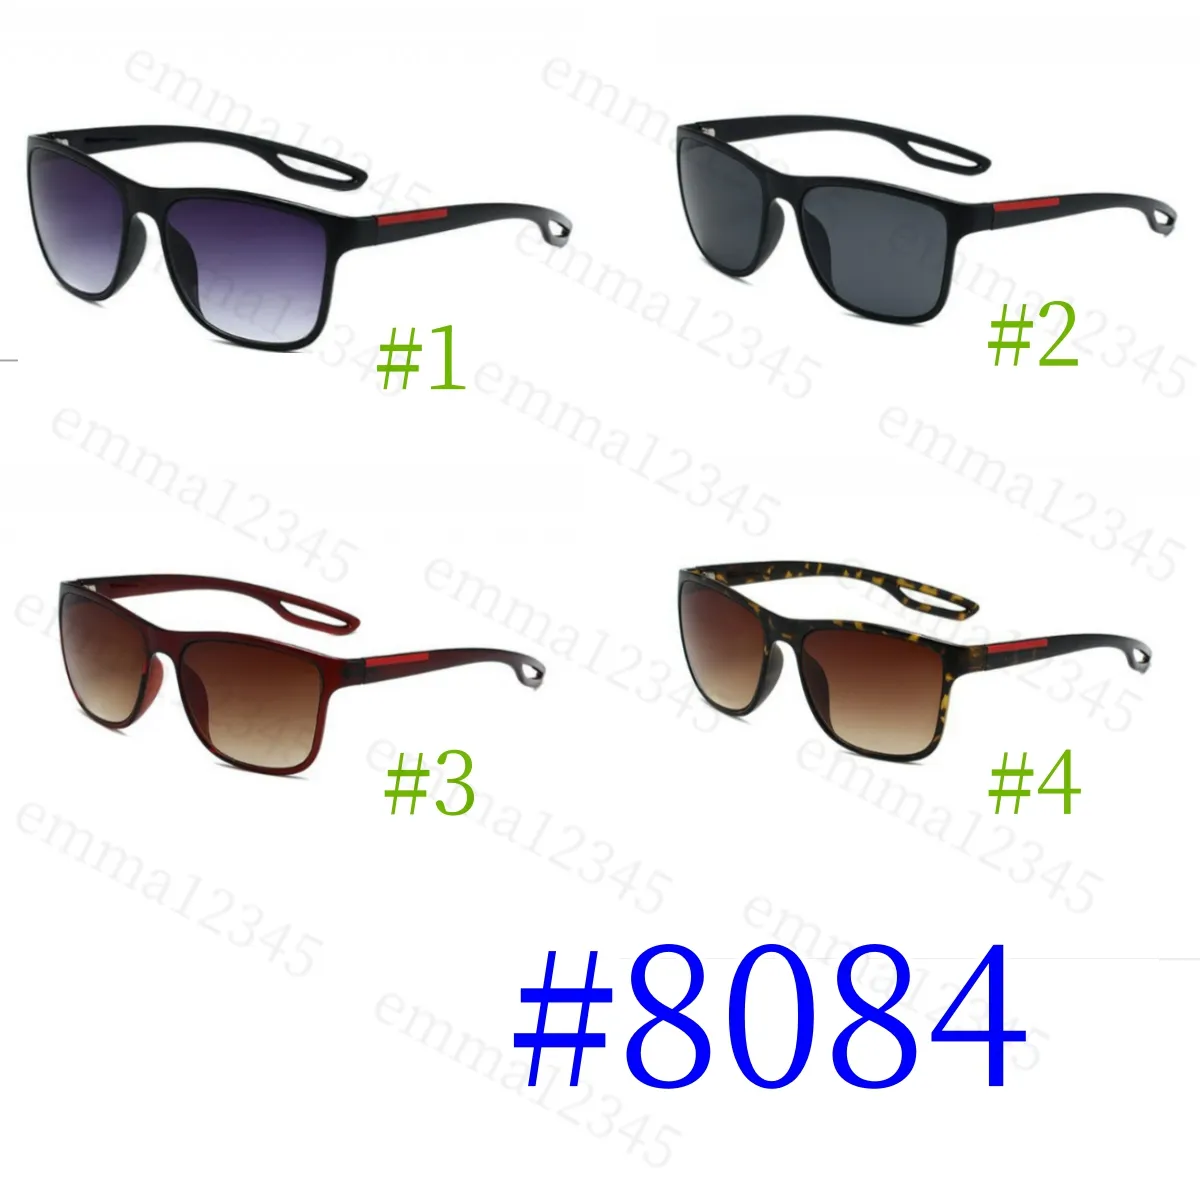 Классические популярные брендовые солнцезащитные очки для мужчин и женщин, модные дизайнерские солнцезащитные очки, модные солнцезащитные очки